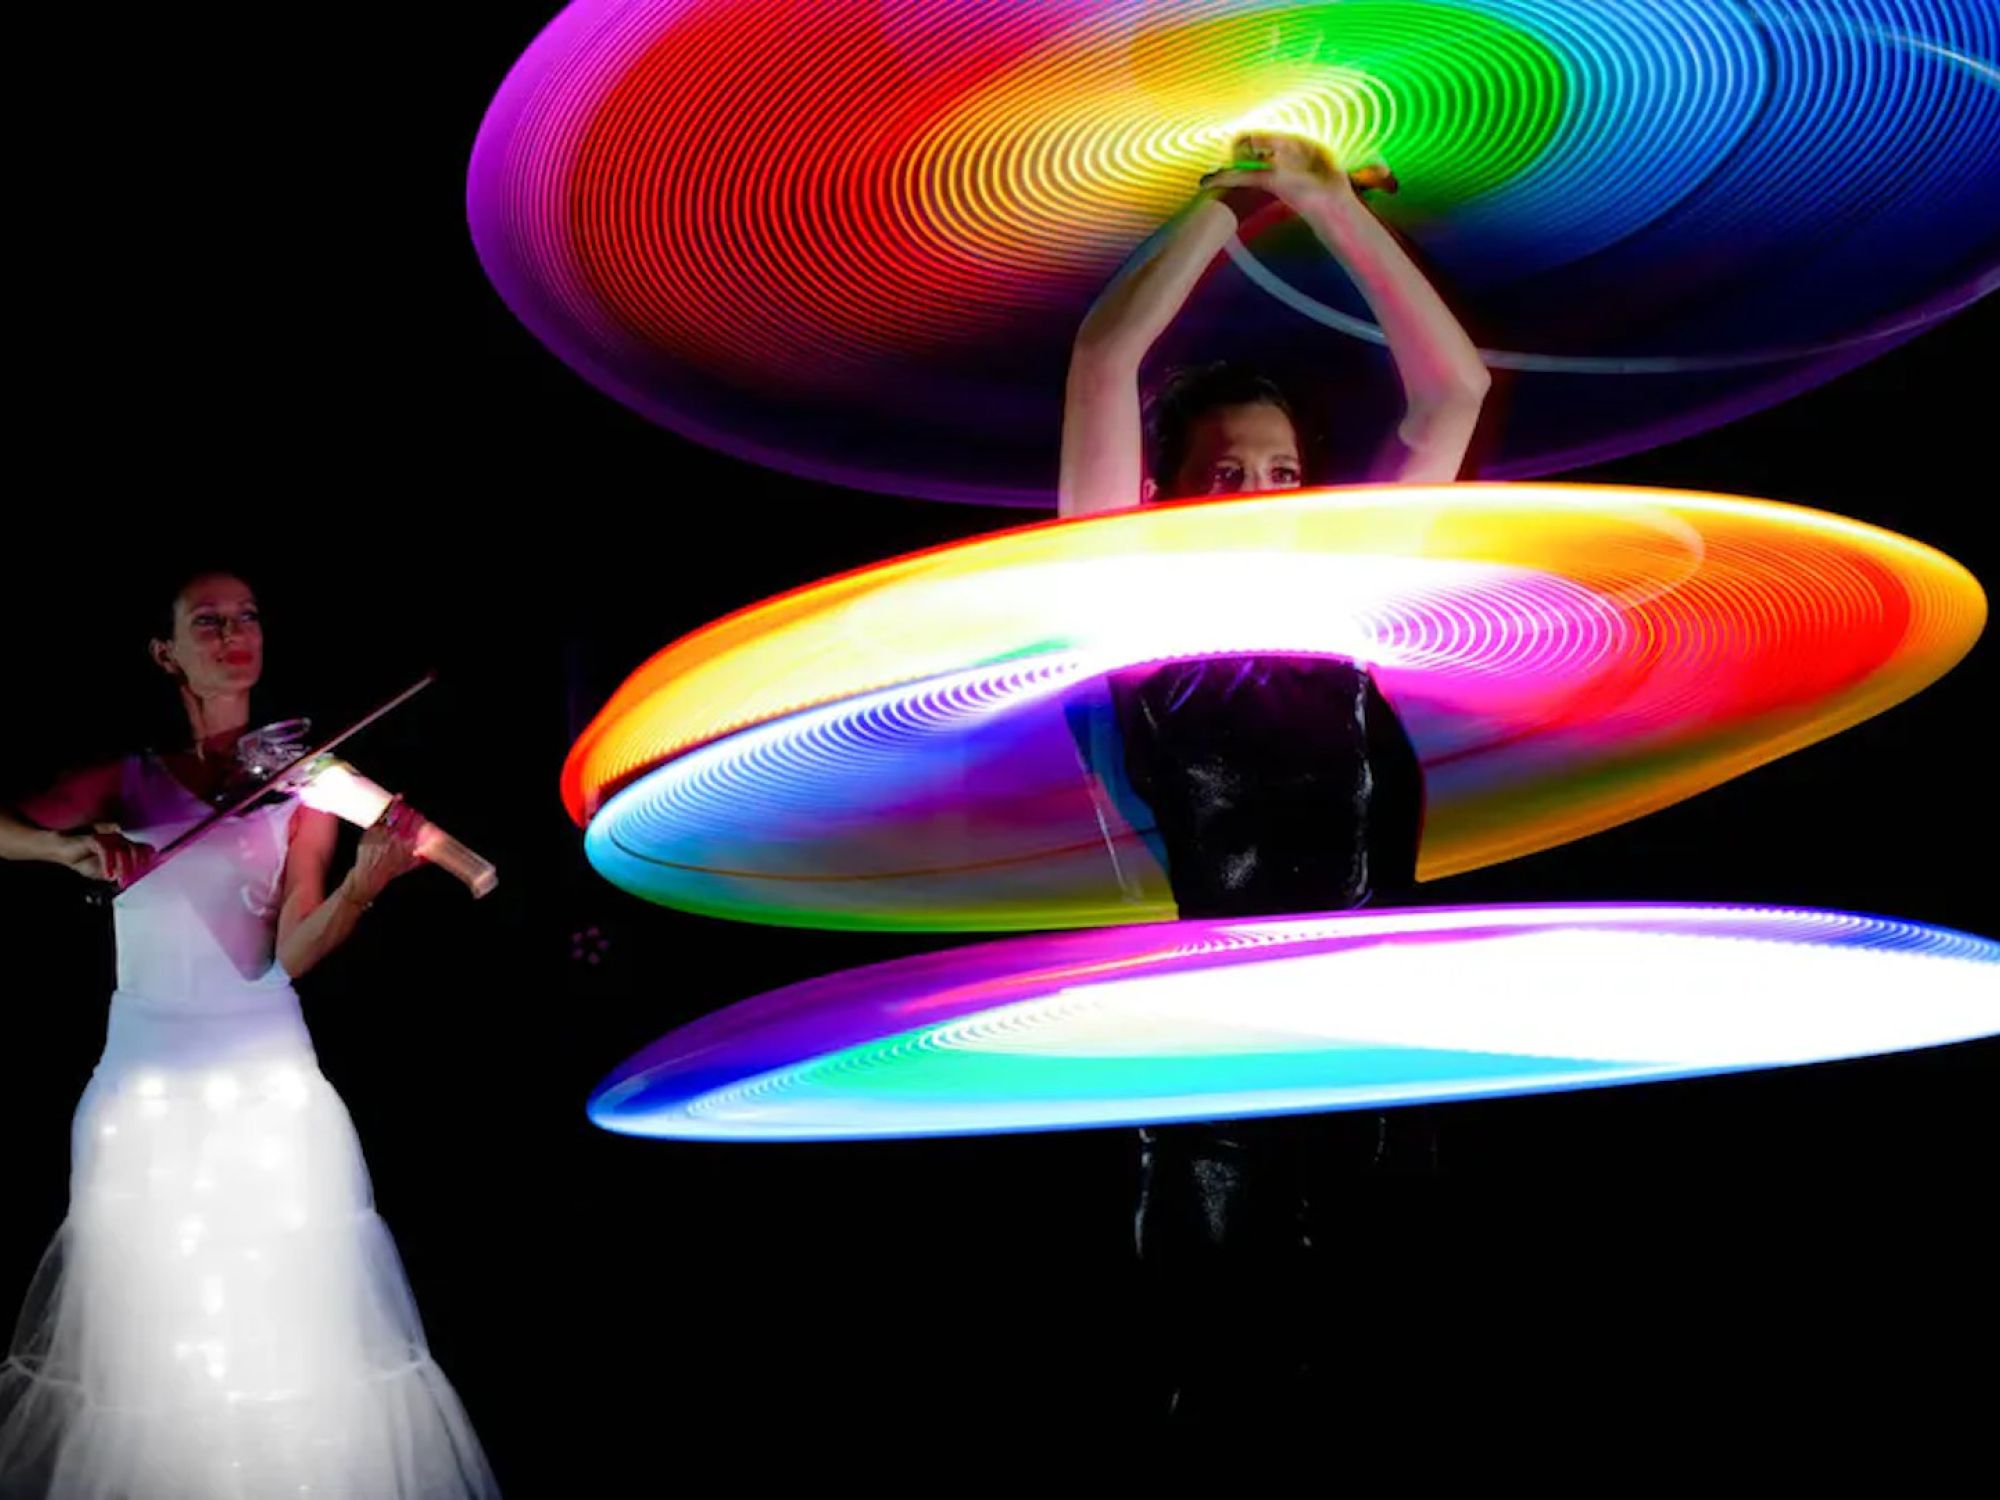 LED-Show mit programmierbaren Hula-Hoop und Live-Musik auf der Violine